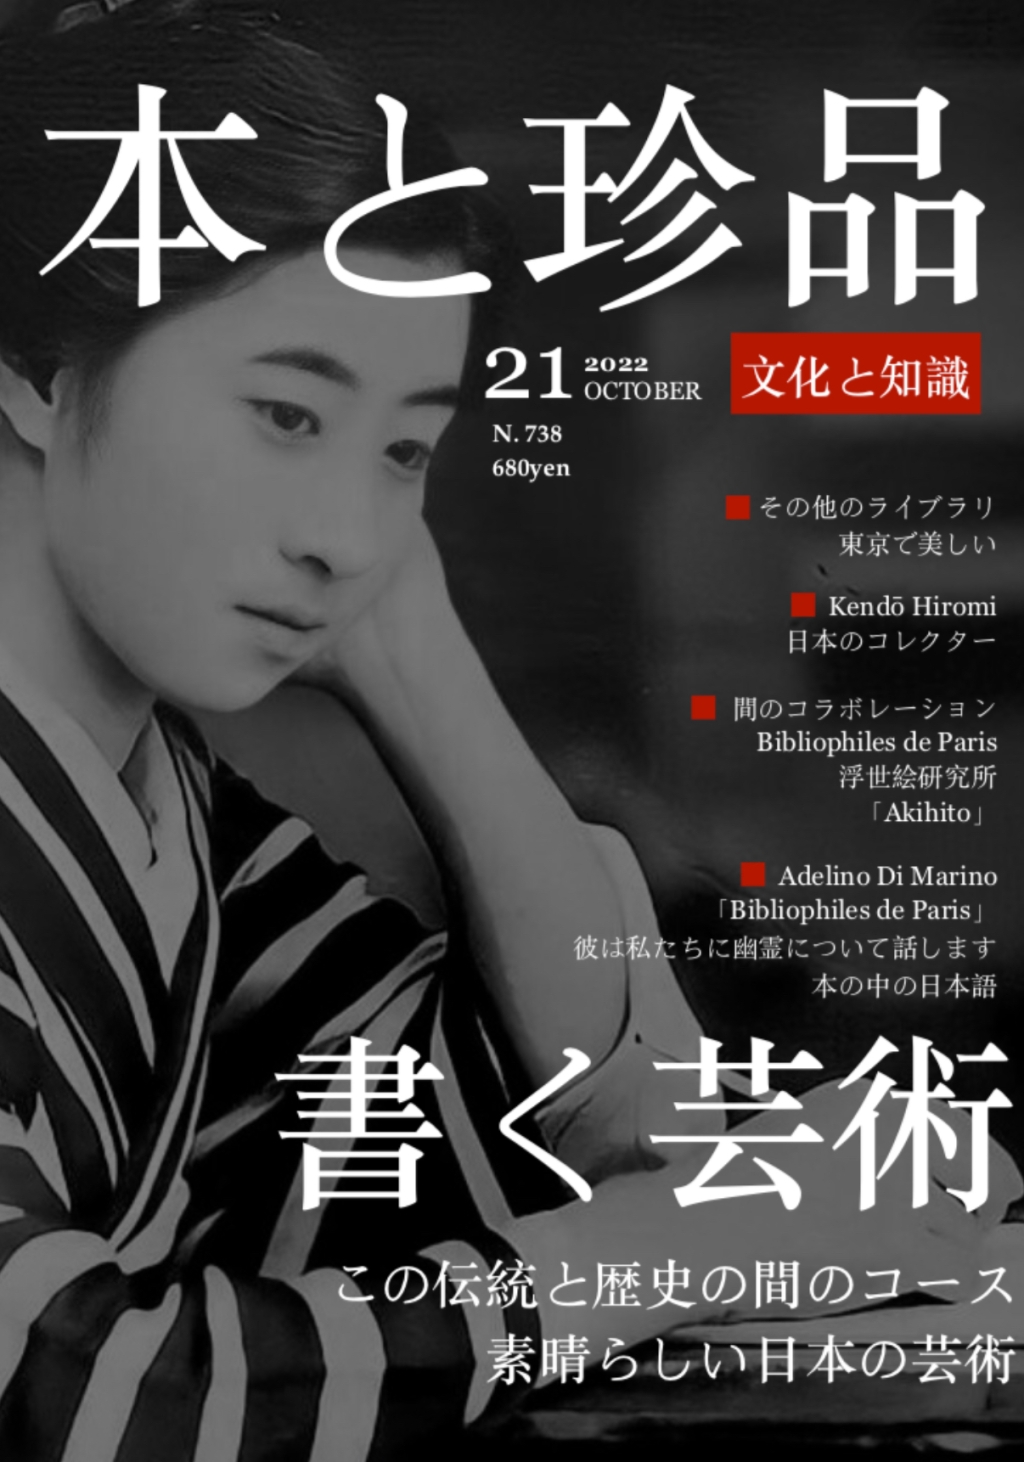 Dans un magazine japonais : Nouvelle collaboration avec le Centre Culturel Akihito au Japon